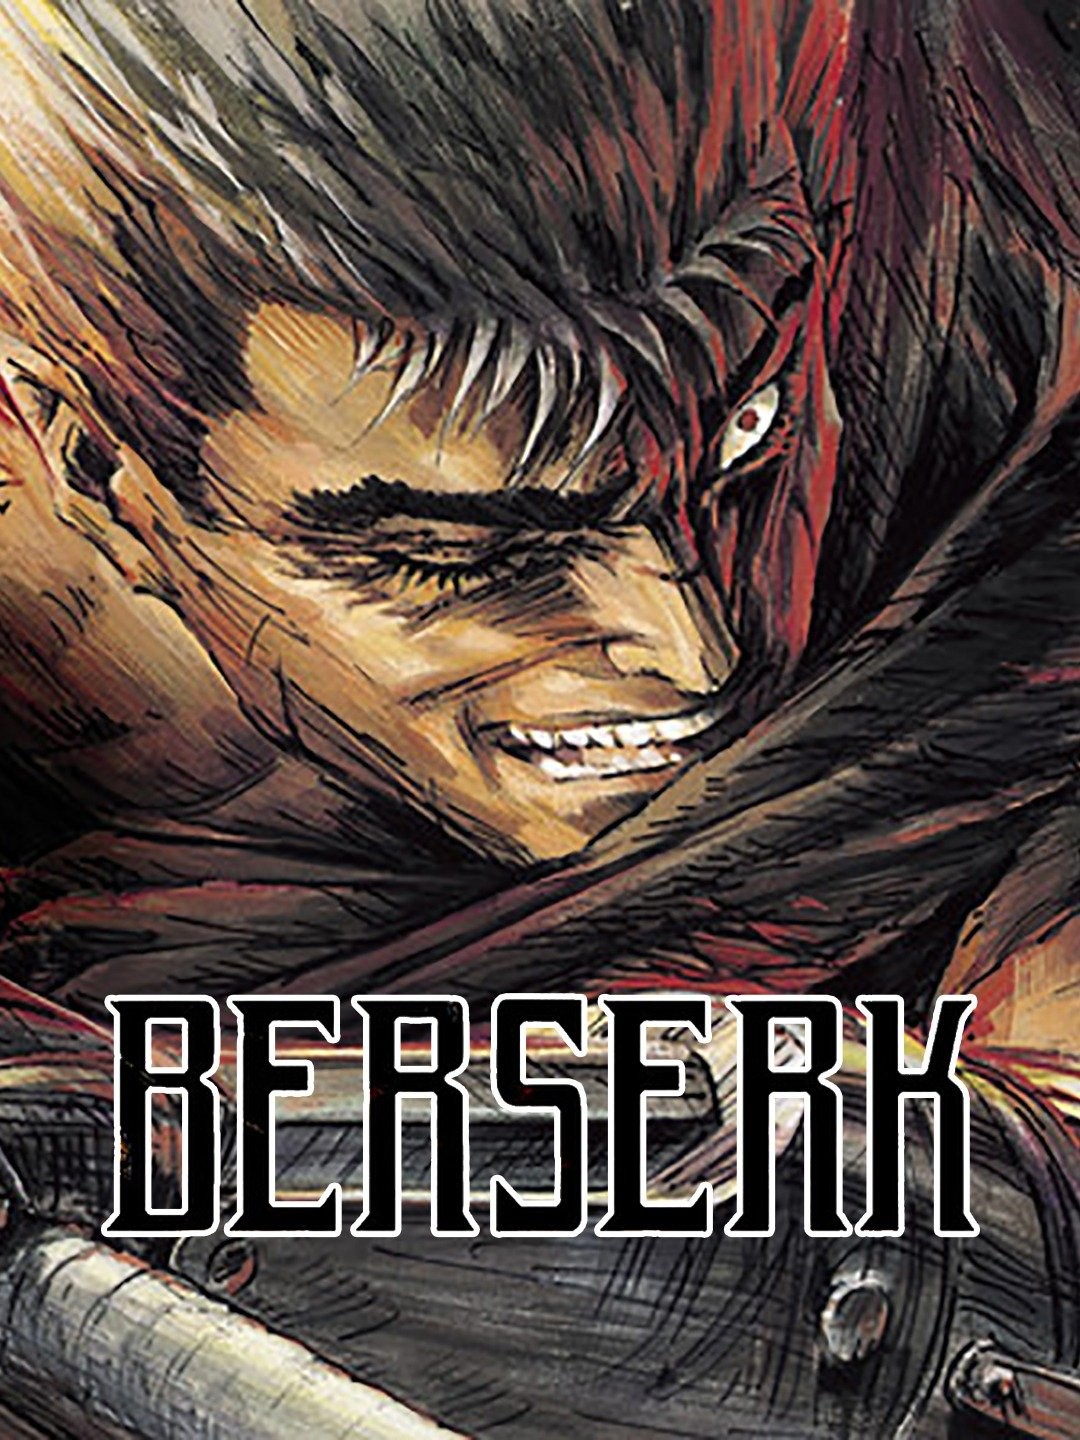 Berserk (Anime) –